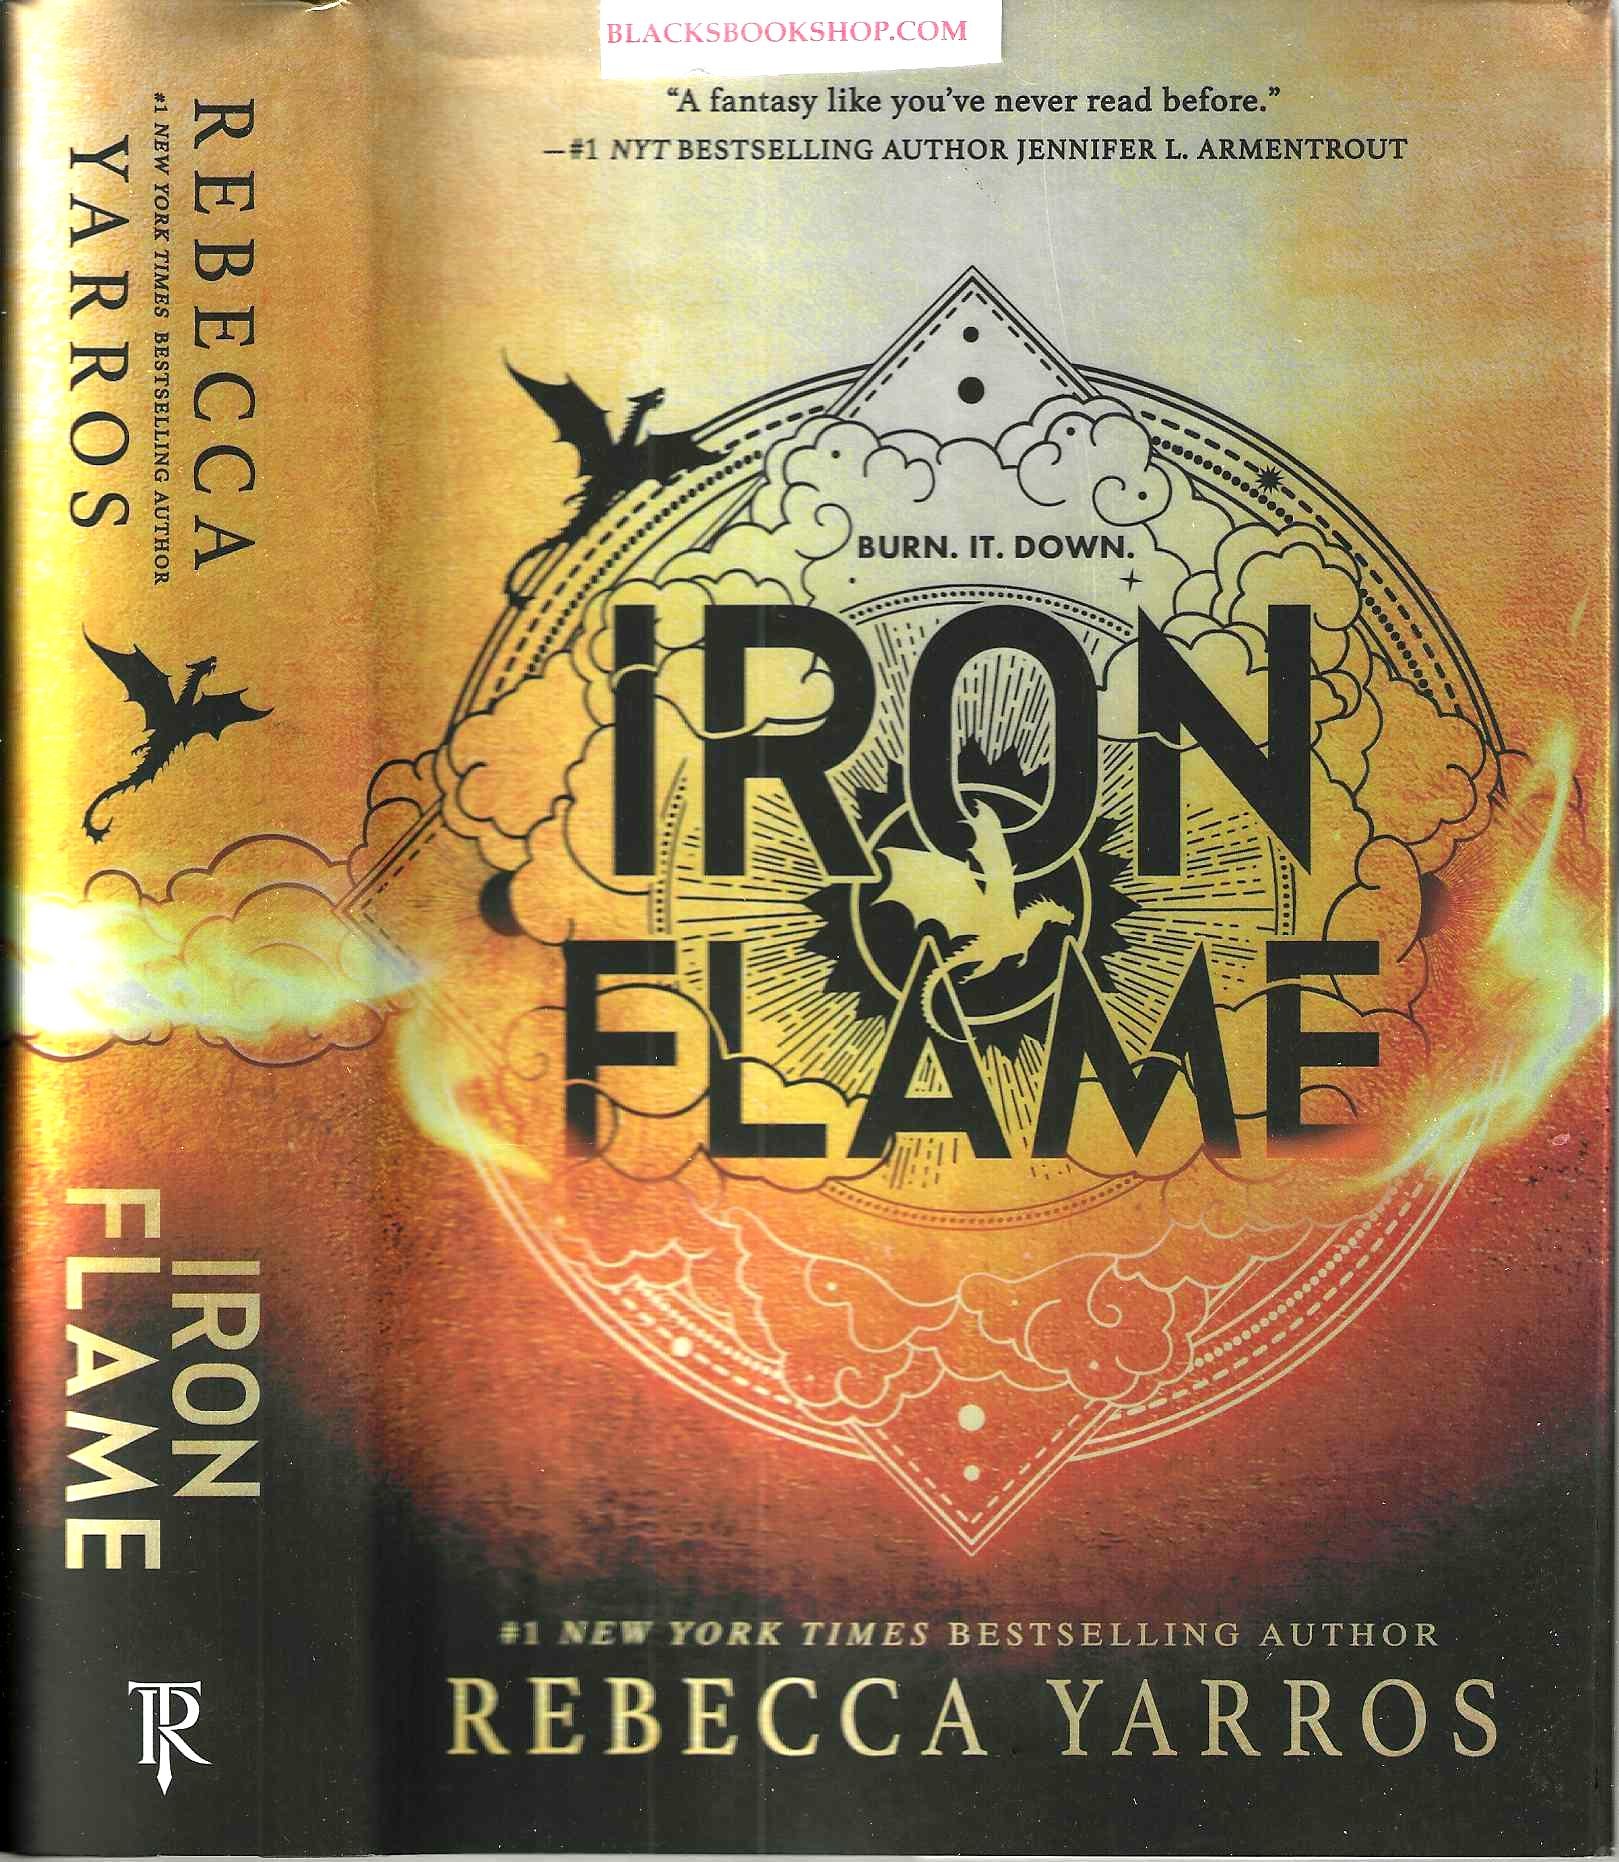 Iron Flame Empyrean #2, Rebecca Yarros